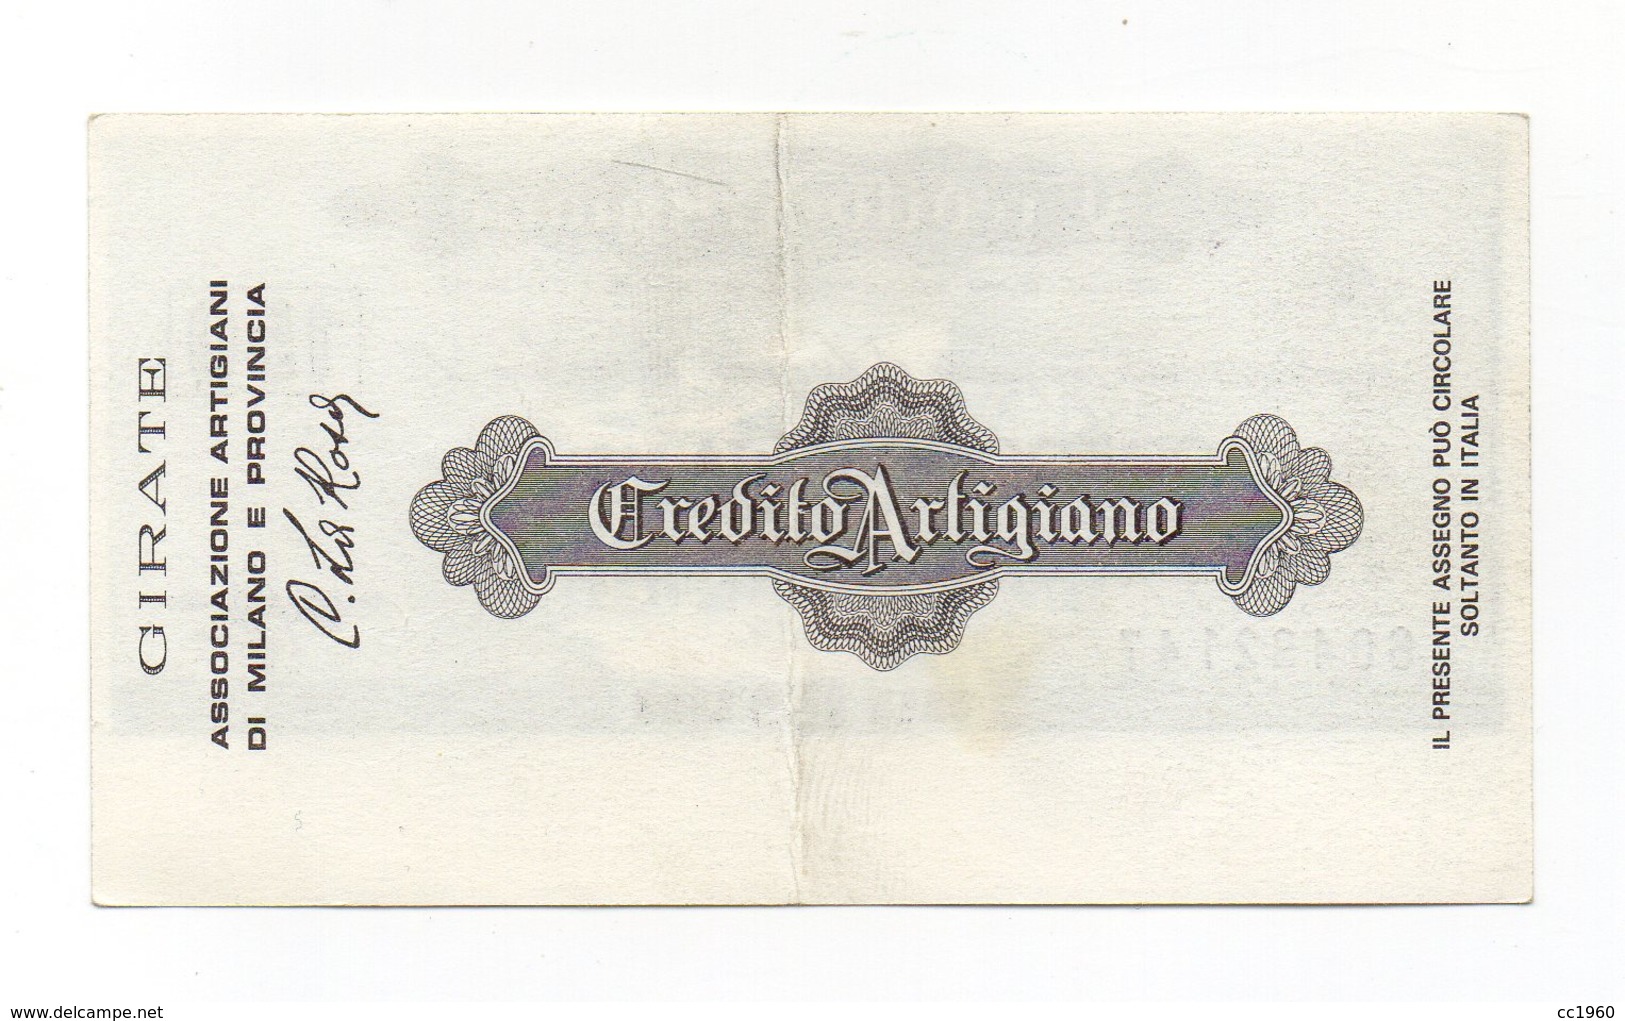 Italia - Miniassegno Da Lire 150 Emesso Dal Credito Artigiano Nel 1977 - (FDC13013) - [10] Assegni E Miniassegni